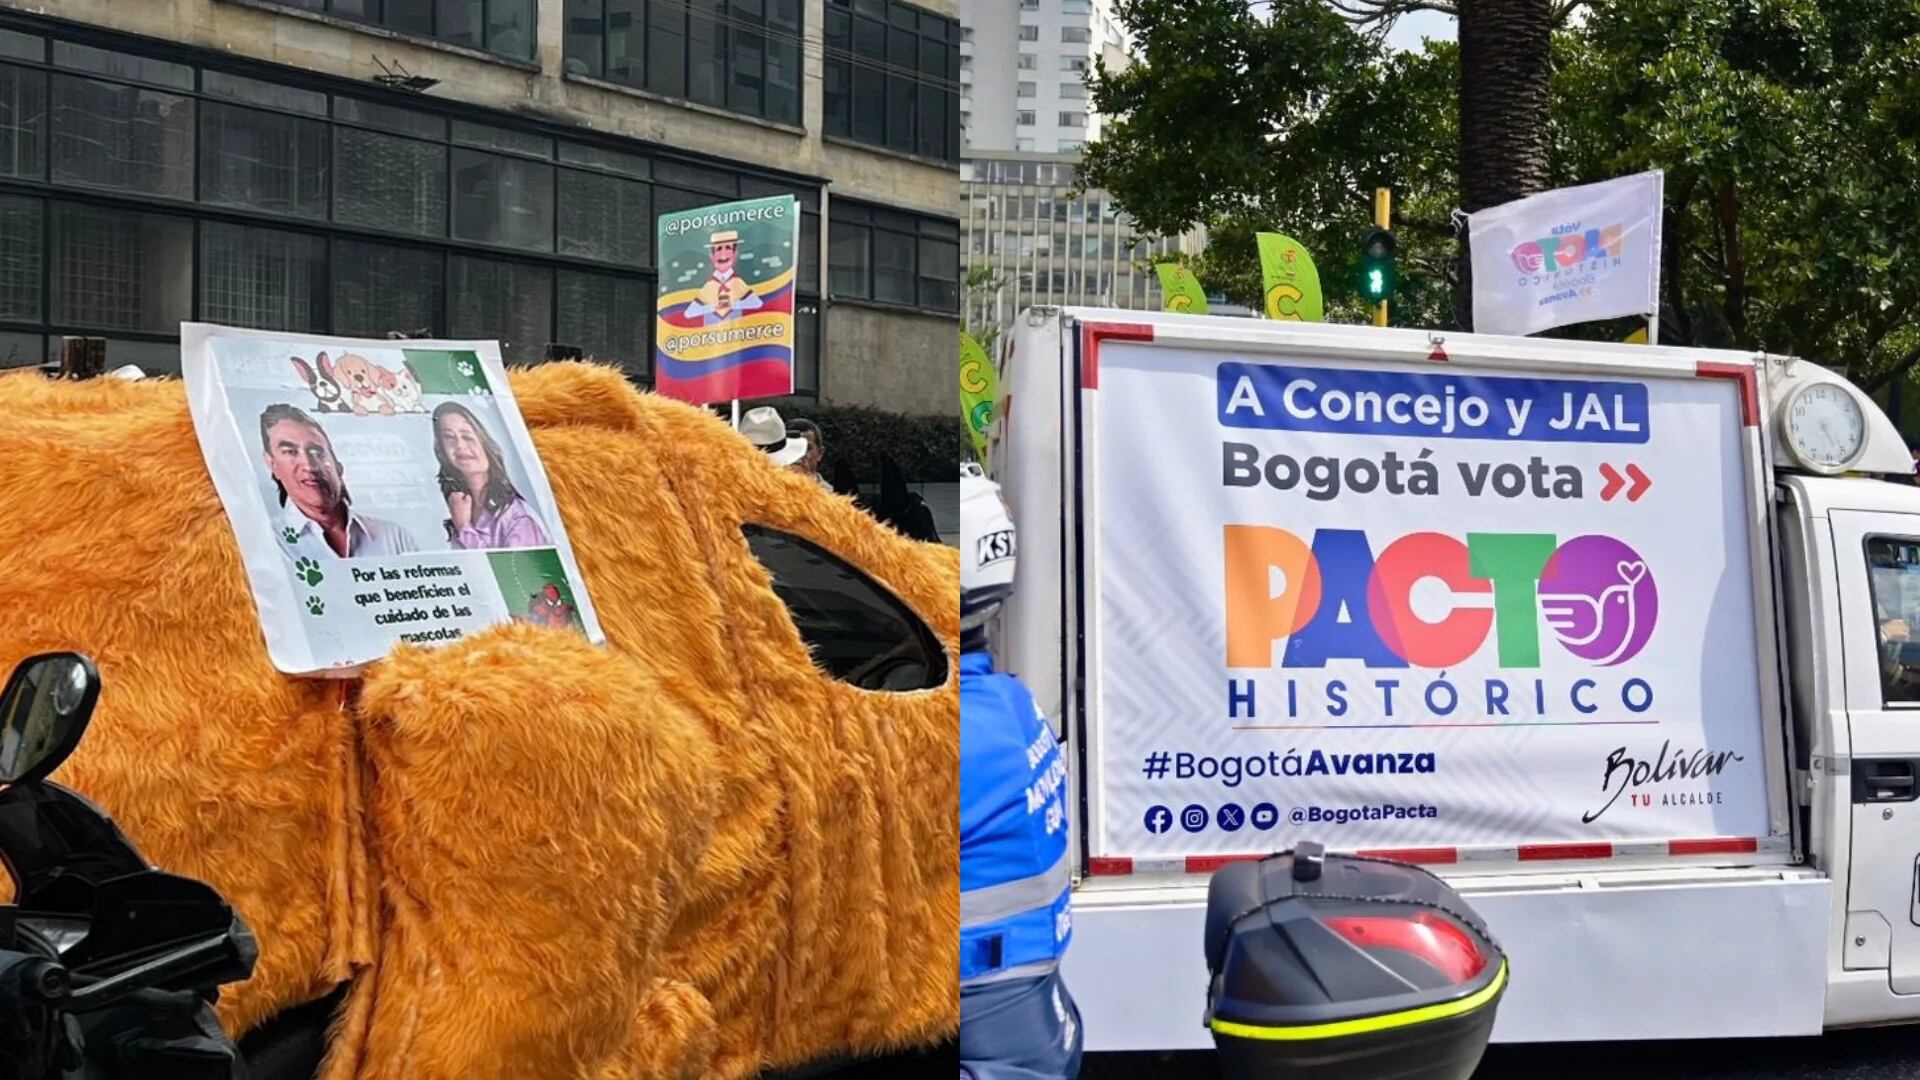 Llueven críticas contra Gustavo Bolívar por publicidad durante marcha a favor del Gobierno Petro en Bogotá